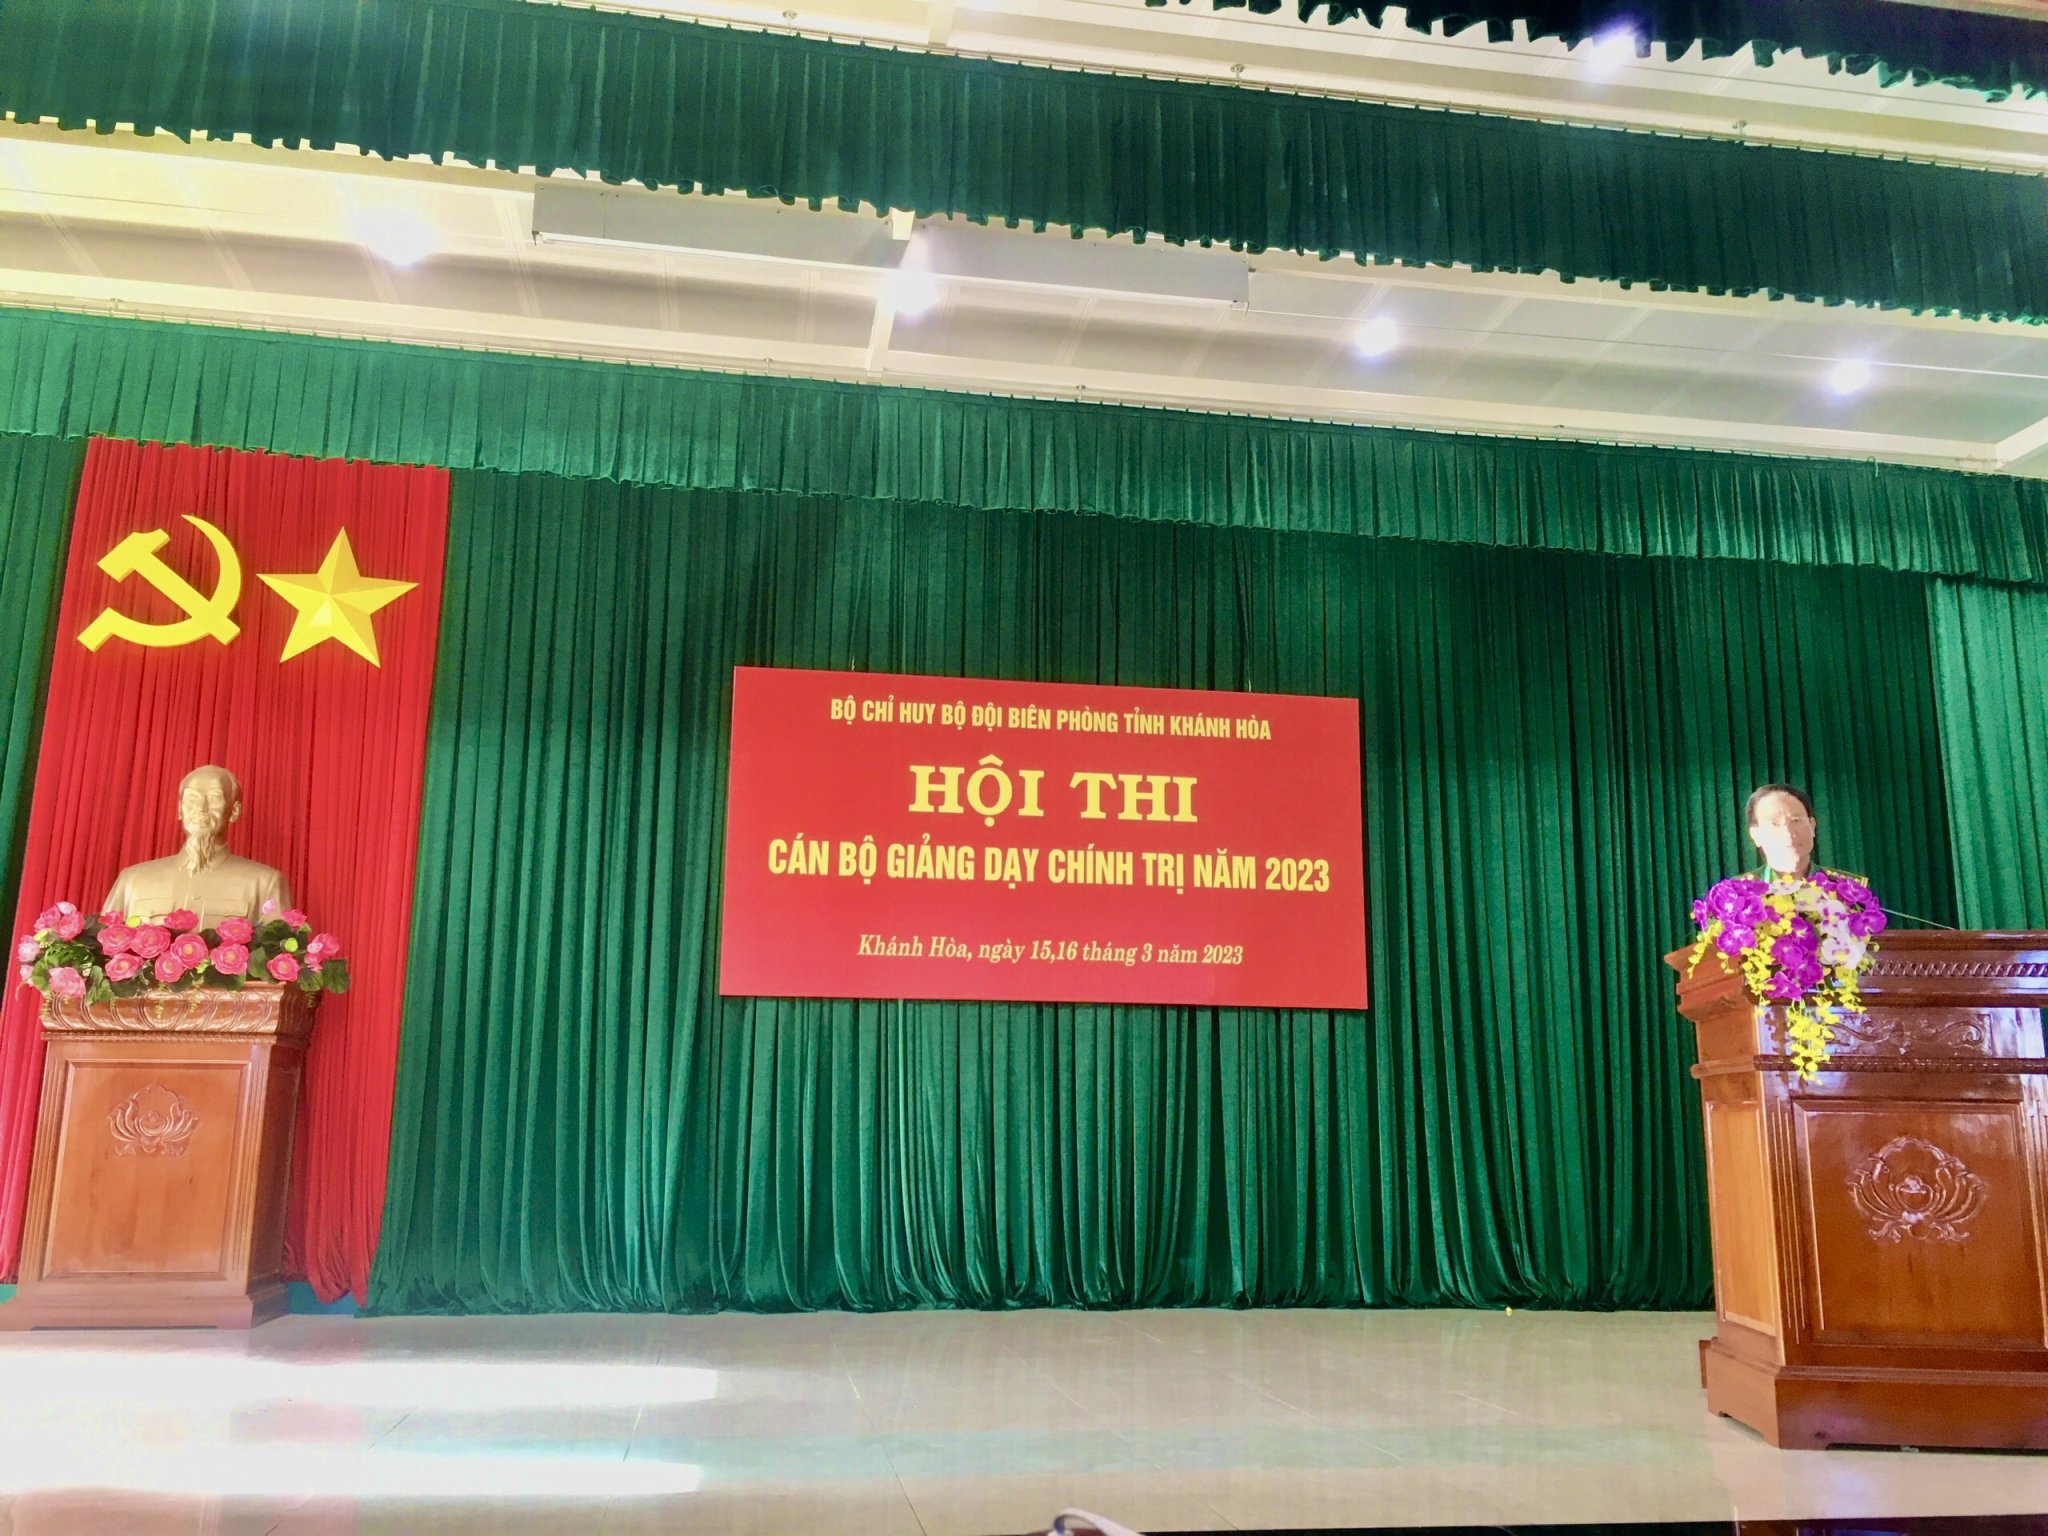 Bộ Chỉ huy Bộ đội Biên phòng tỉnh Khánh Hòa khai mạc Hội thi cán bộ giảng dạy chính trị năm 2023